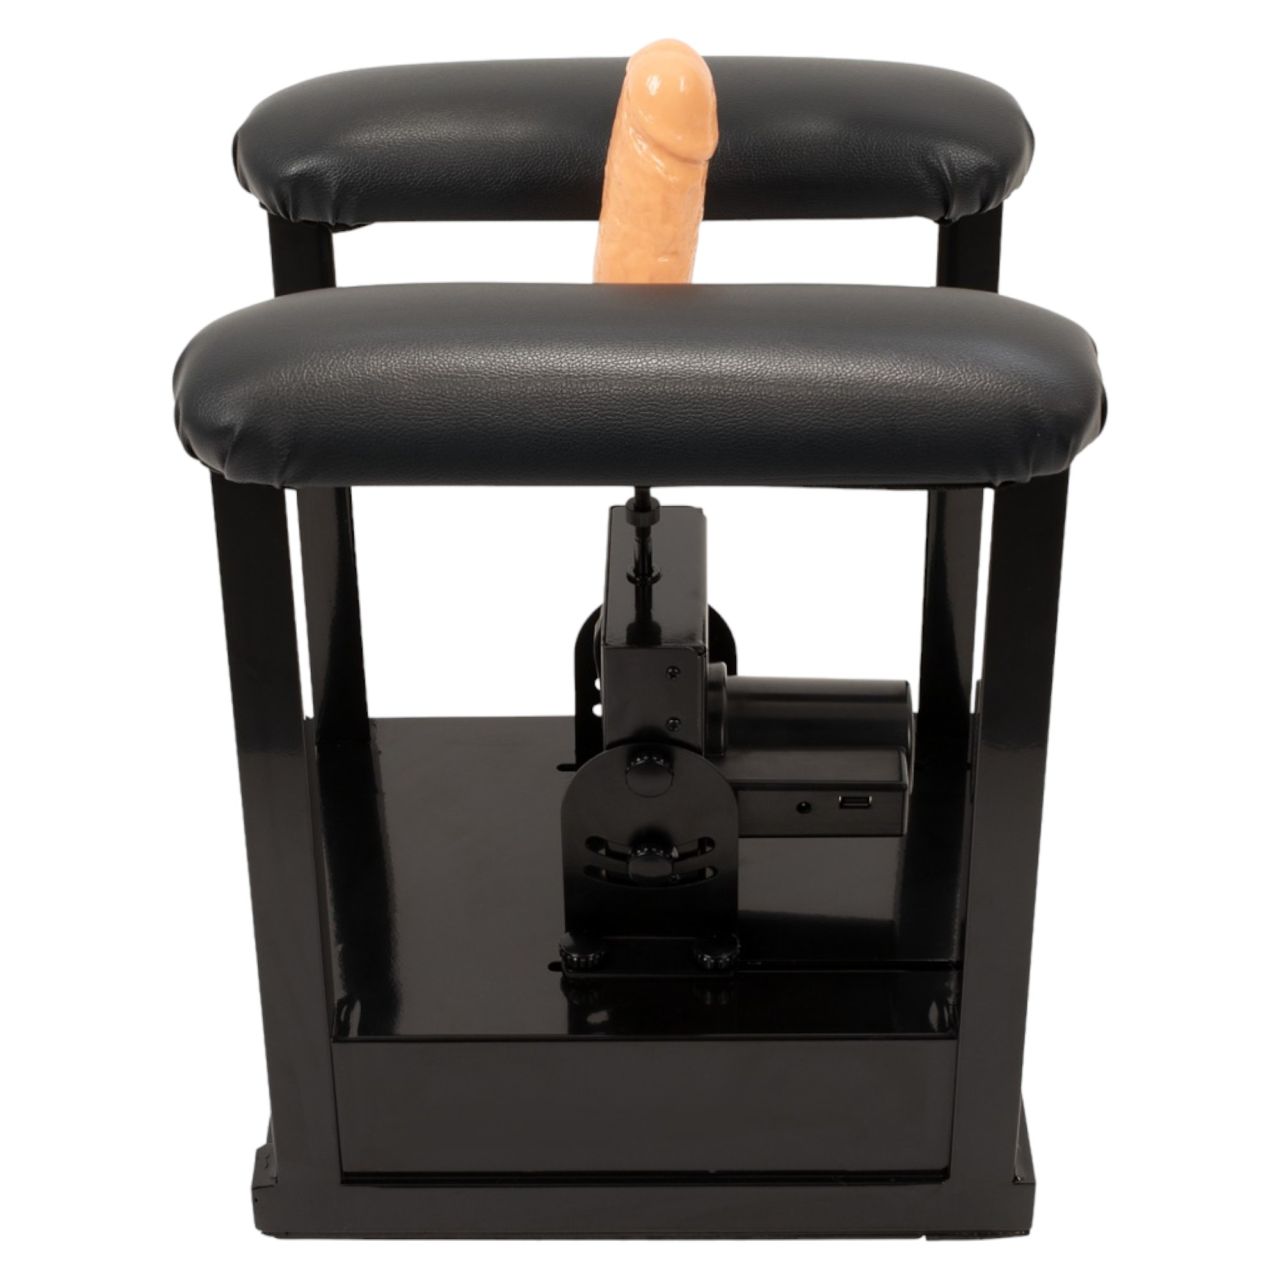 The Banger Sit-On-Climaxer - hálózati szexgép (fekete)